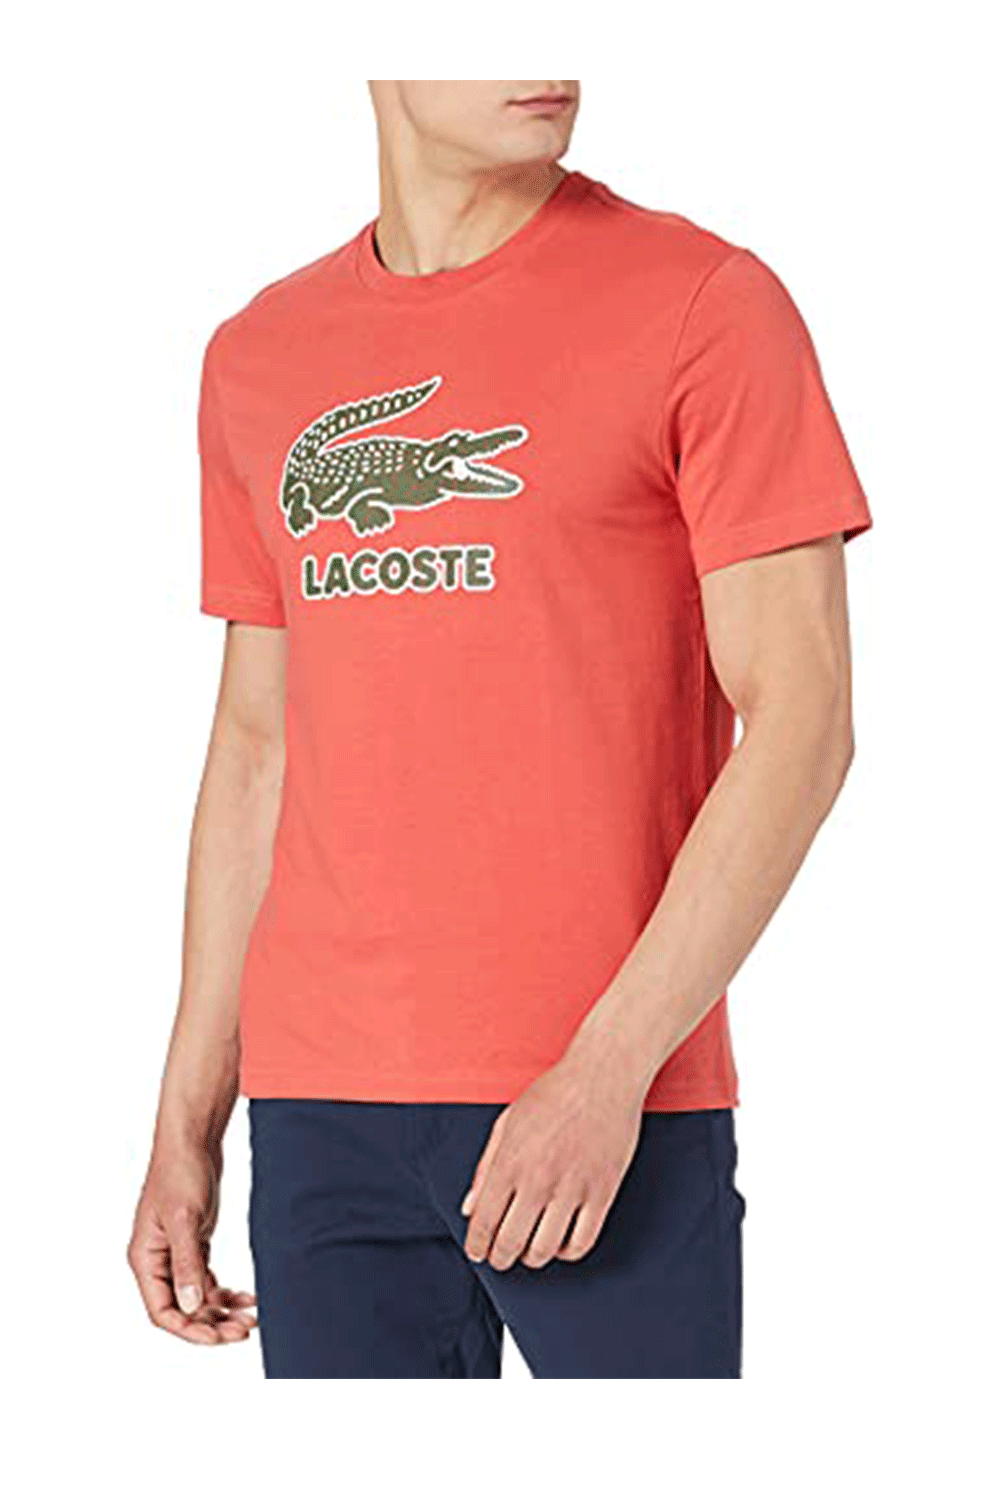 Lacoste Men's Crew Neck Crackled Logo Print Cotton T-shirt – Fashions